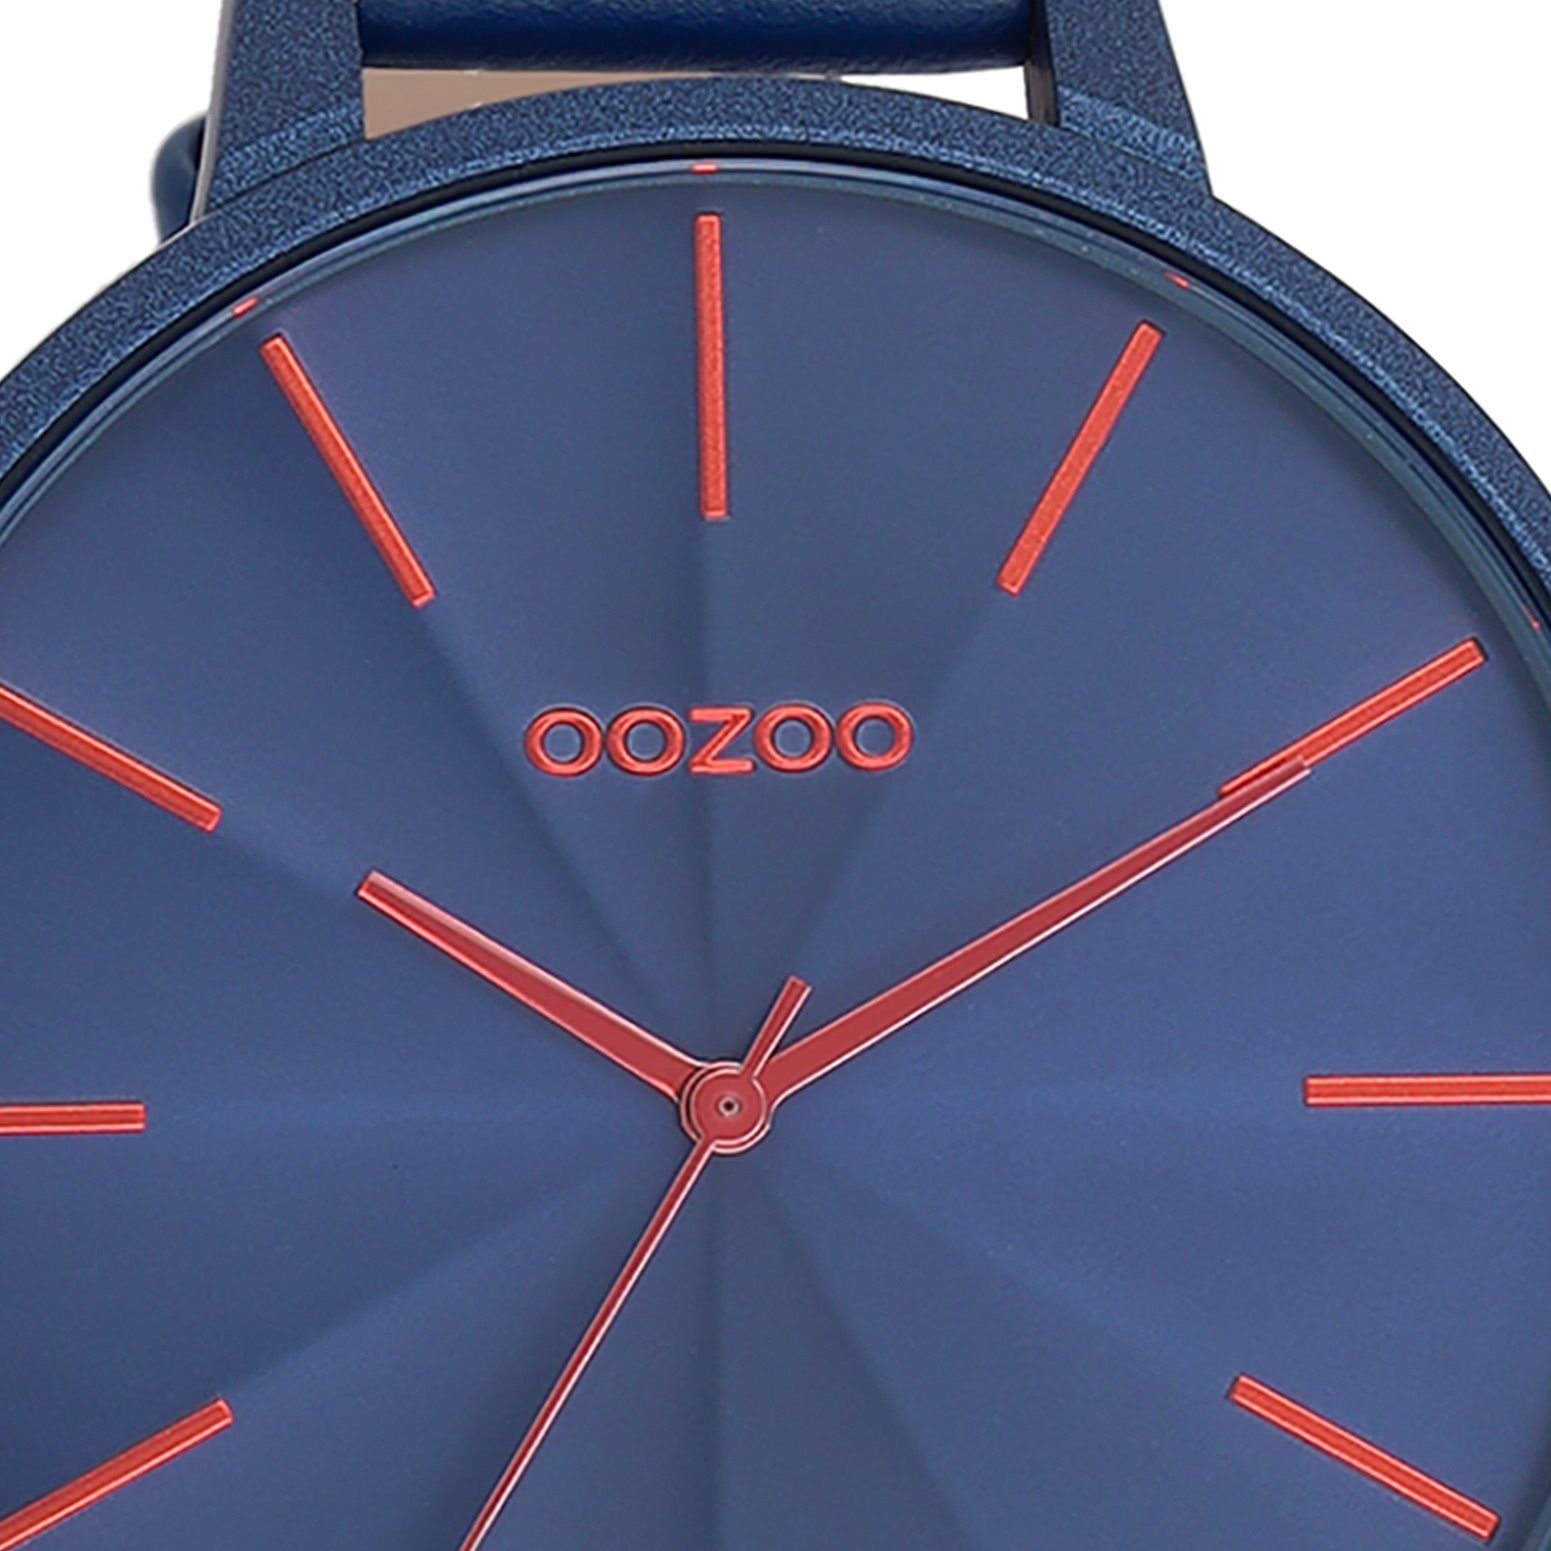 Japanisches Oozoo 48mm) Timepieces Quarzuhr Damenuhr OOZOO extra Lederarmband, rund, (ca. Fashion-Style, groß Analog, Armbanduhr Laufwerk Damen